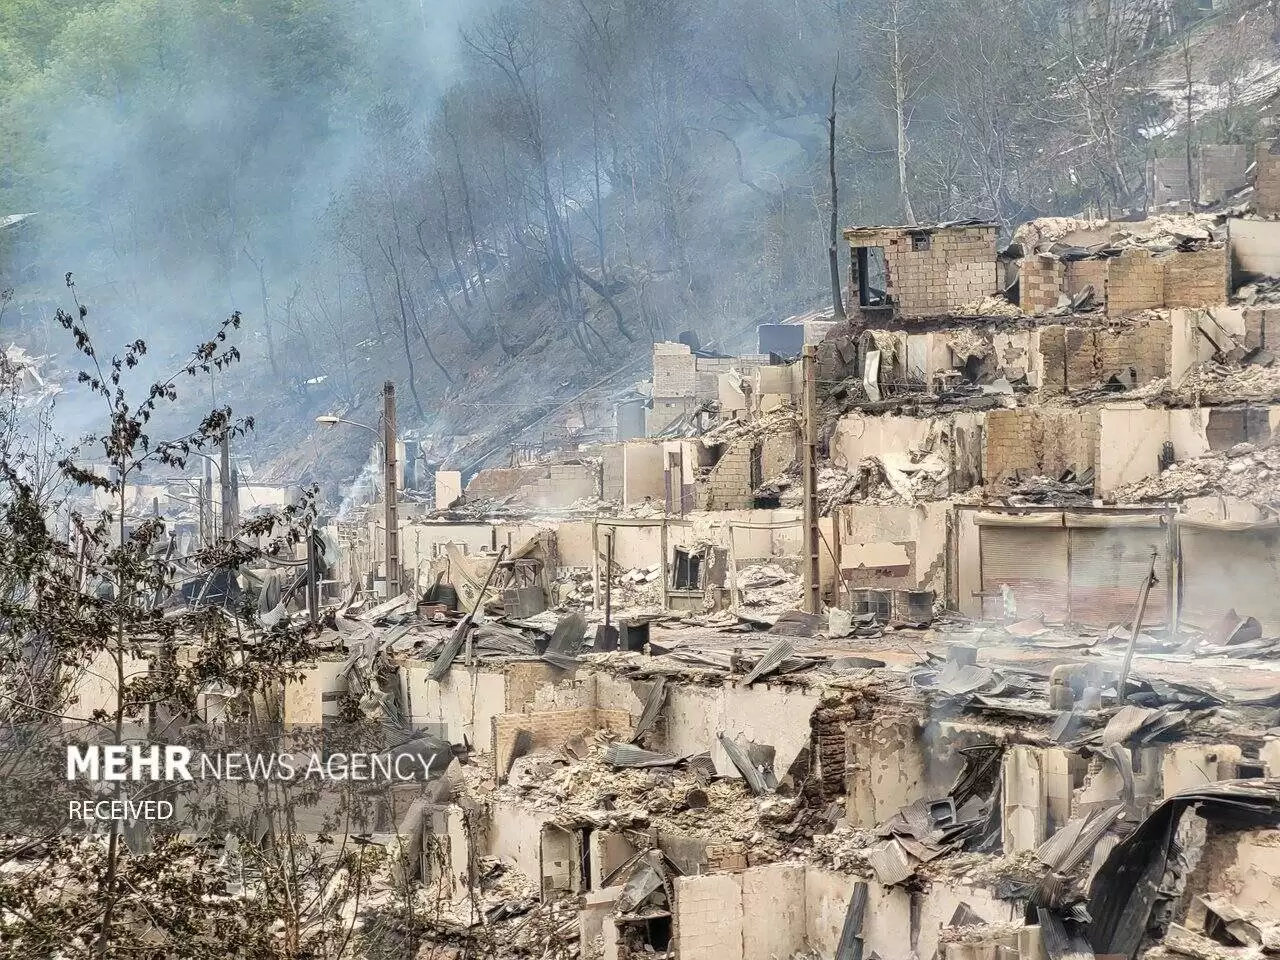   تصاویر ناگوار جدید از بقایای آتش سوزی در گیلان  -  اینجا دیگر ویرانه است!